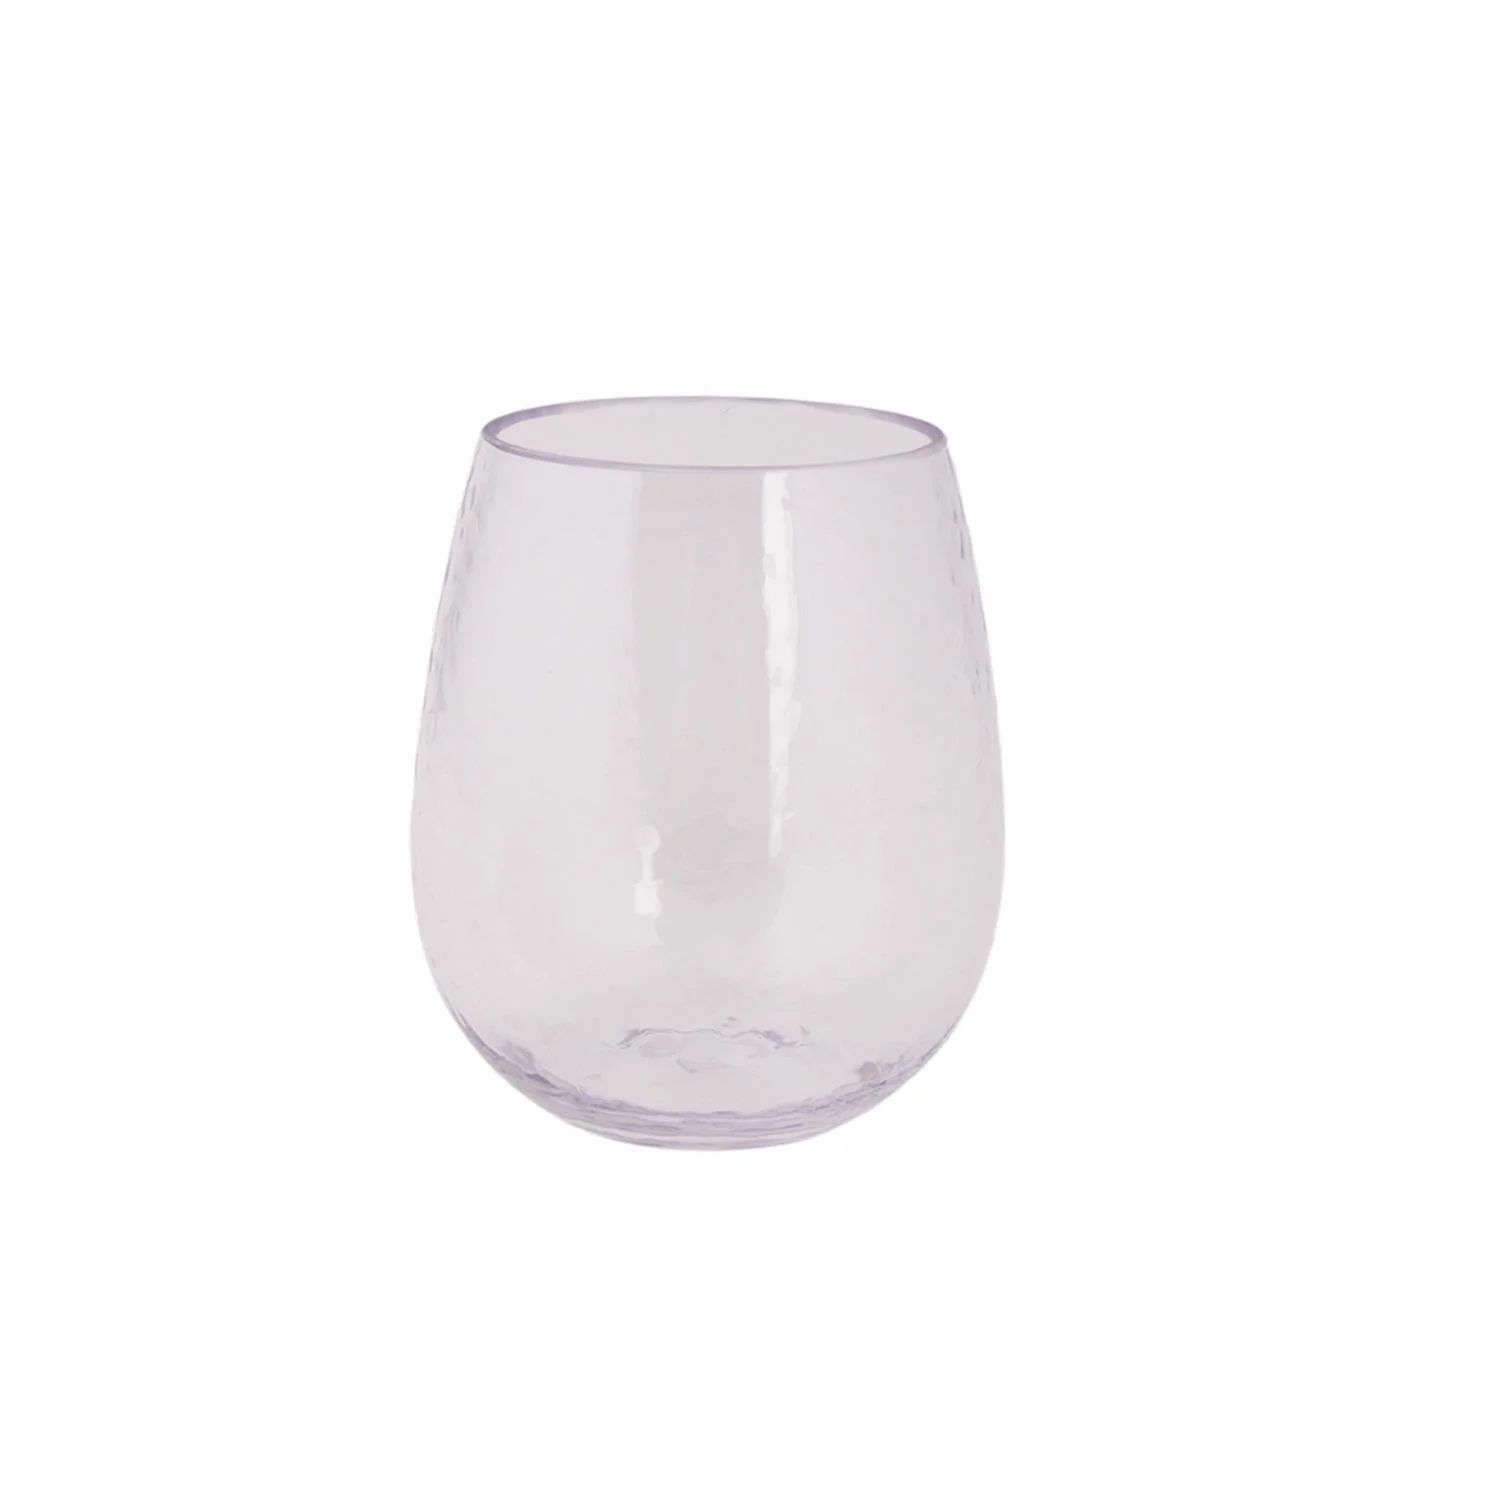 Hometrends Clear Acrylic Stemless Wine Glass, 17.53oz 1pc, Stemless Wine Glass | Walmart (CA)